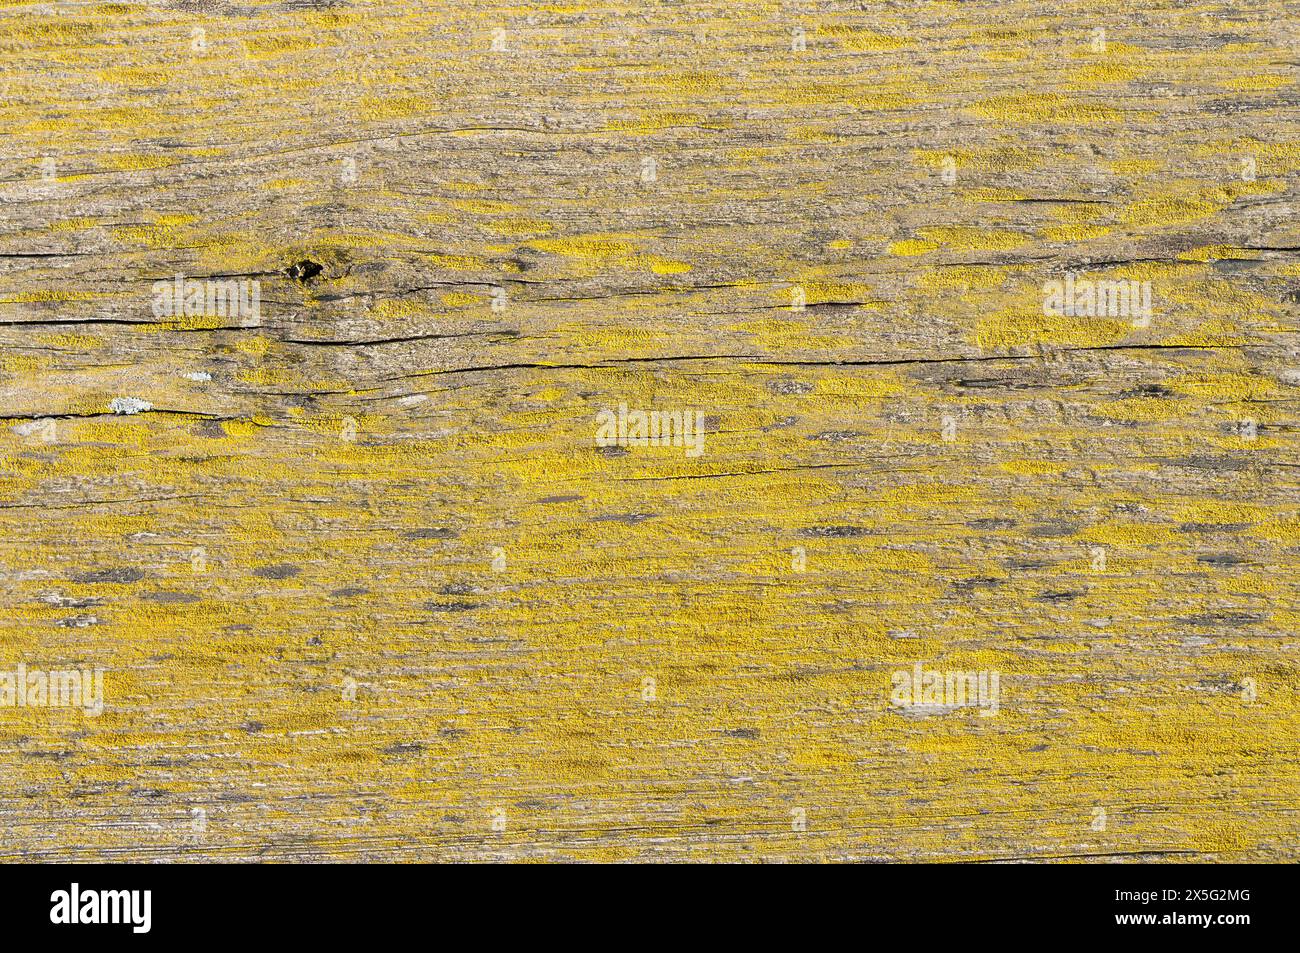 Image haute résolution capturant les textures détaillées de la croissance de lichen sur la surface altérée d'une vieille planche de bois. Banque D'Images